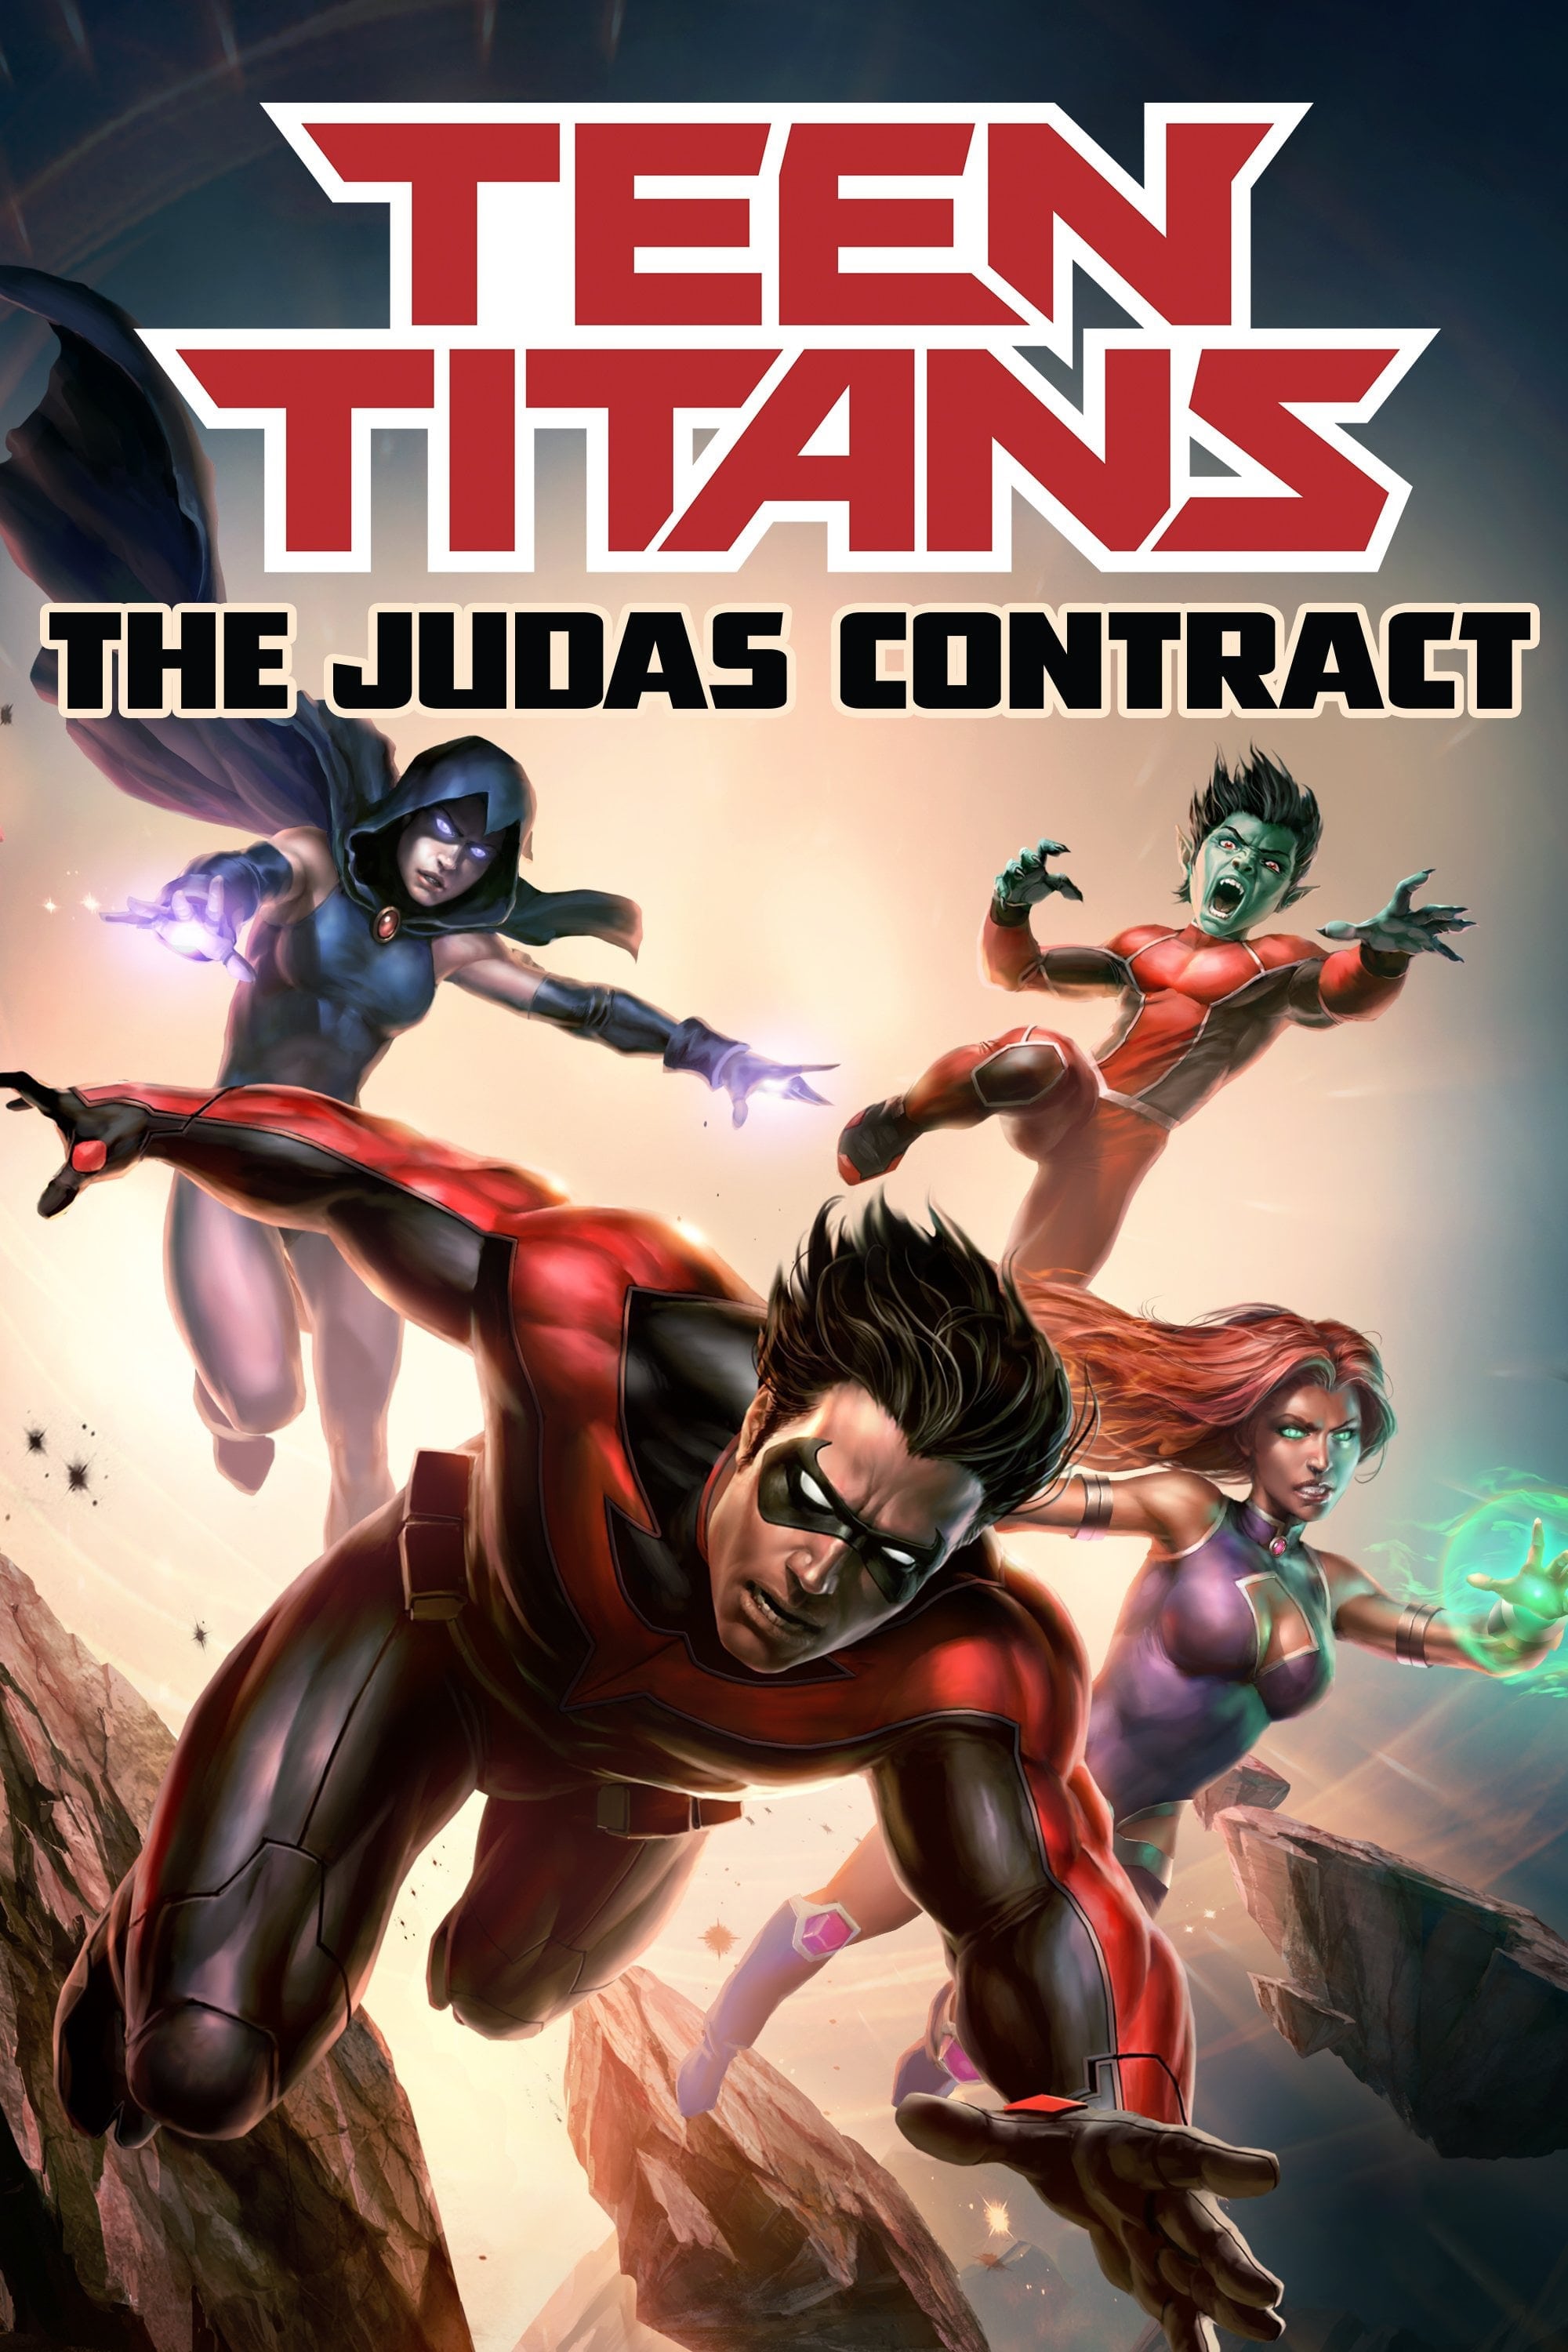 Teen Titans: Thỏa Thuận Judas (Teen Titans: The Judas Contract) [2017]